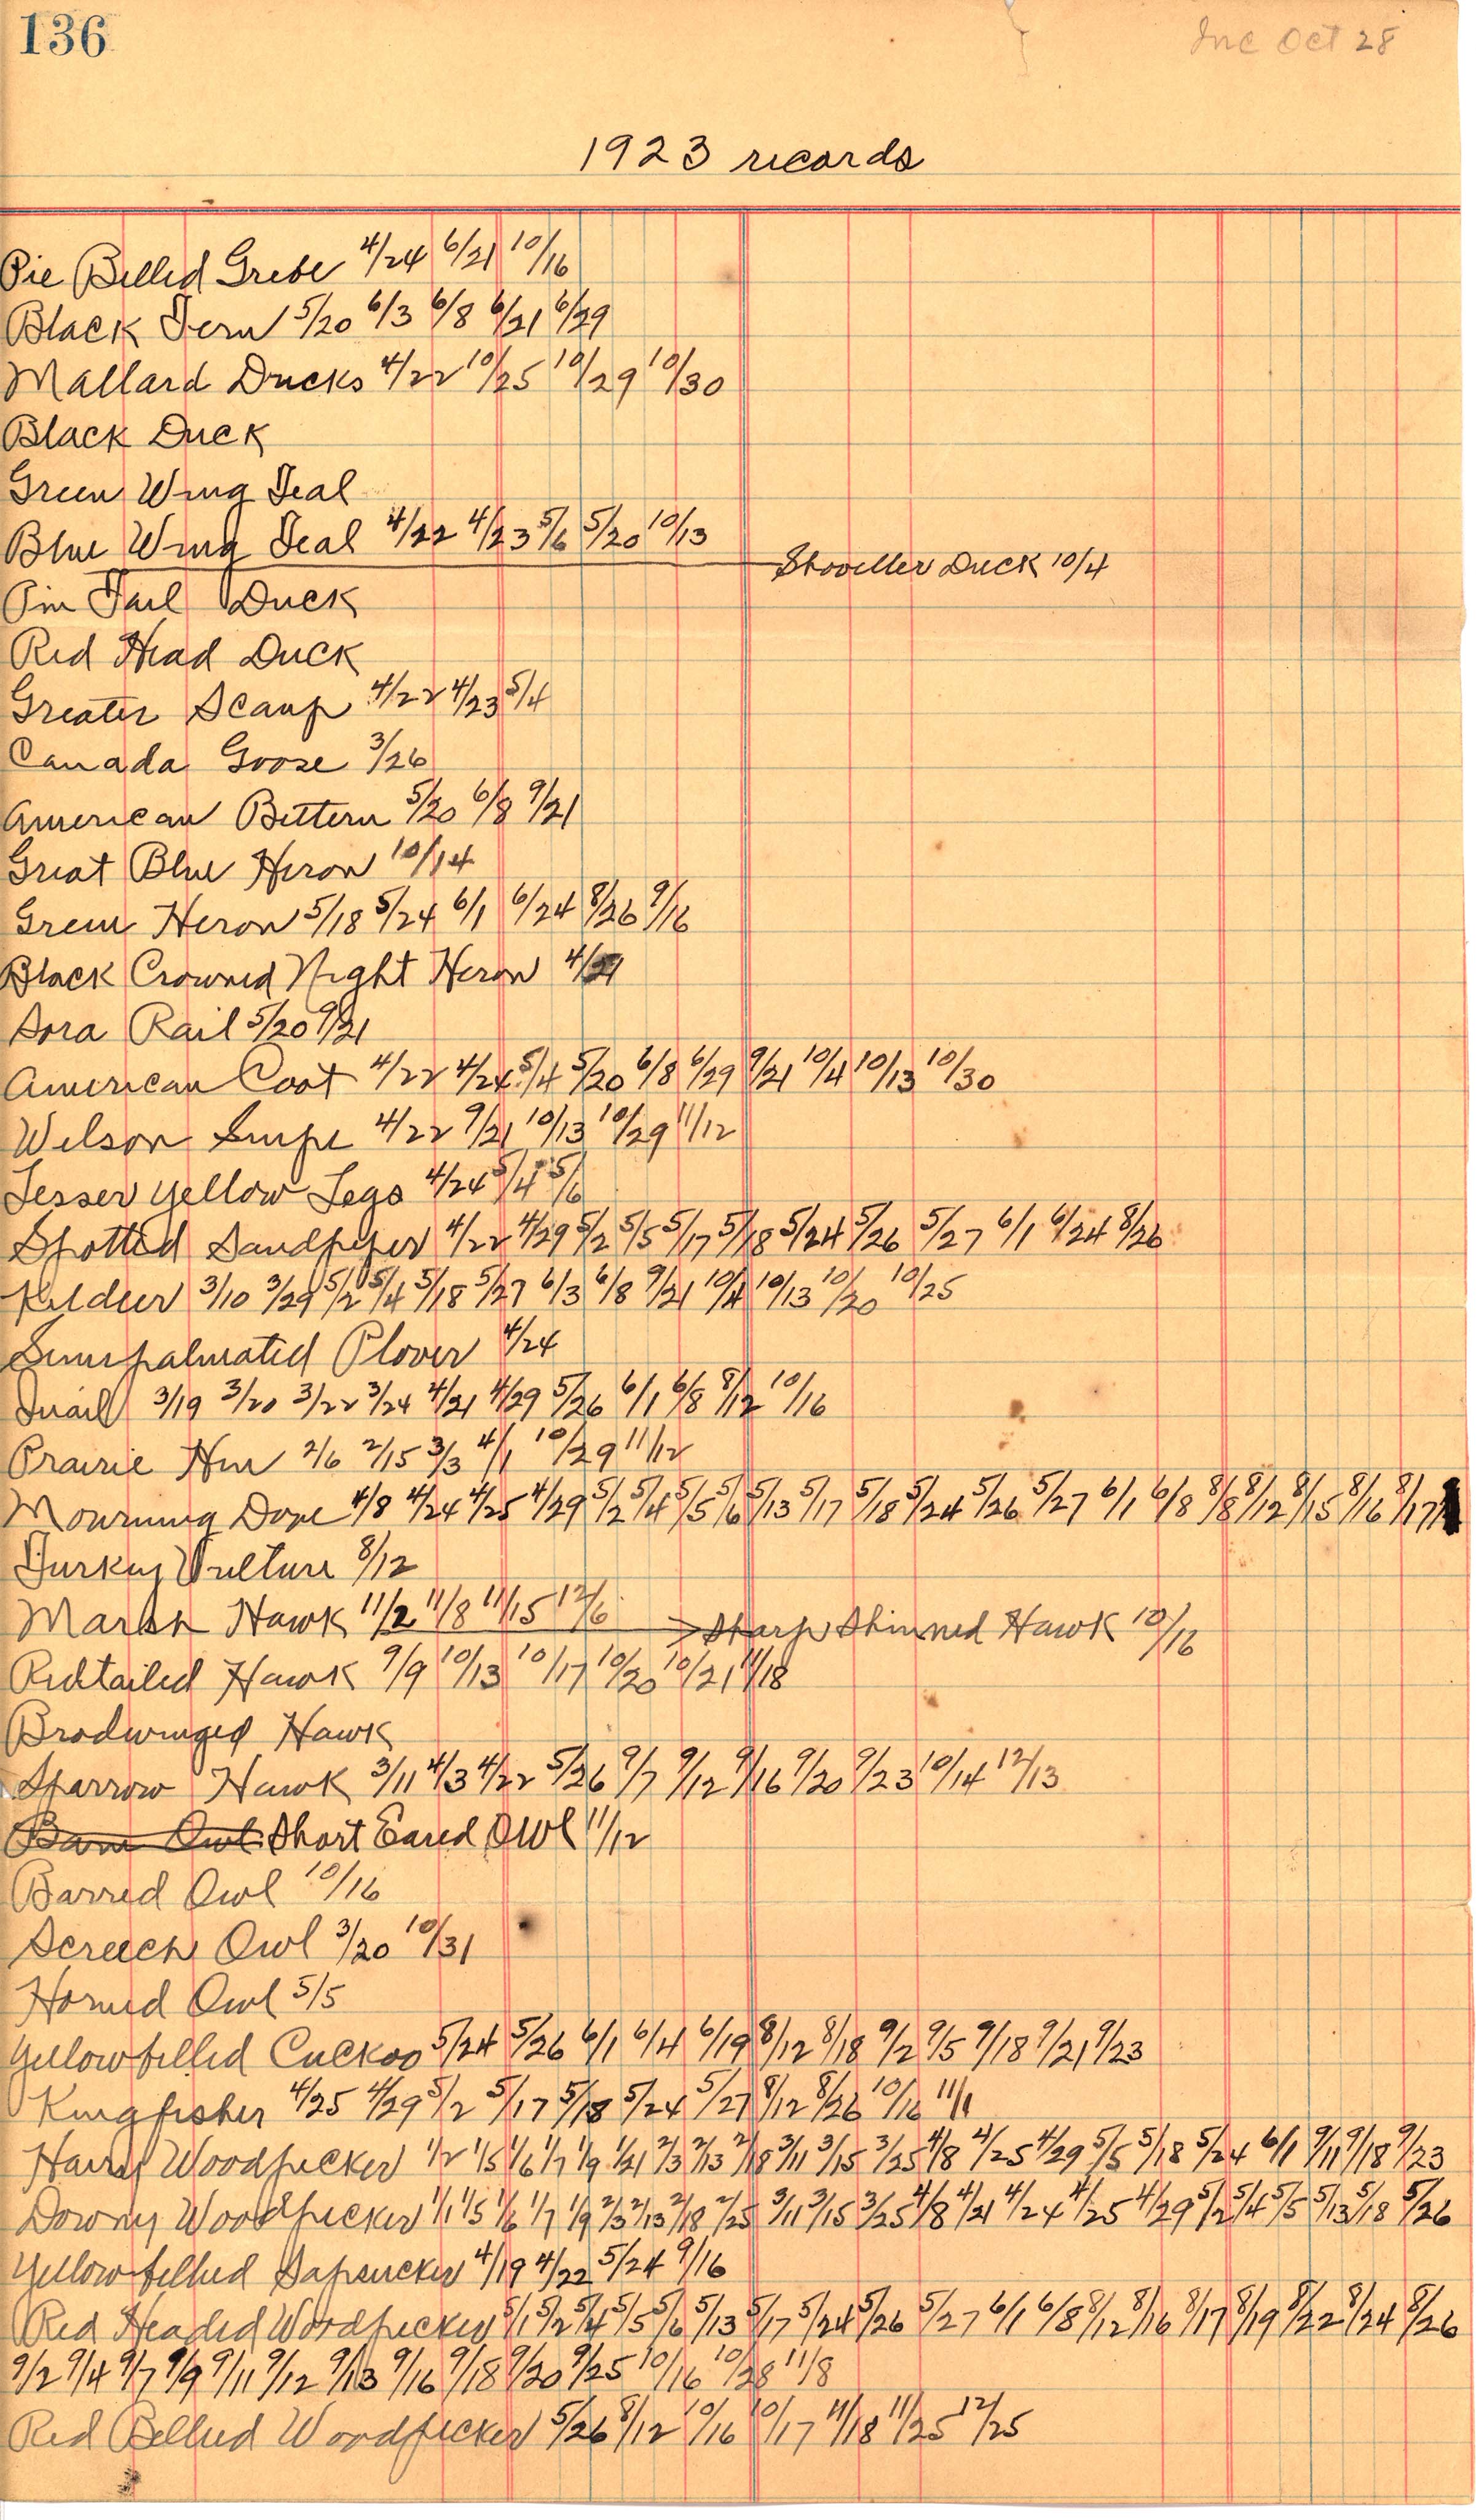 Walter Rosene 1923 bird sighting records